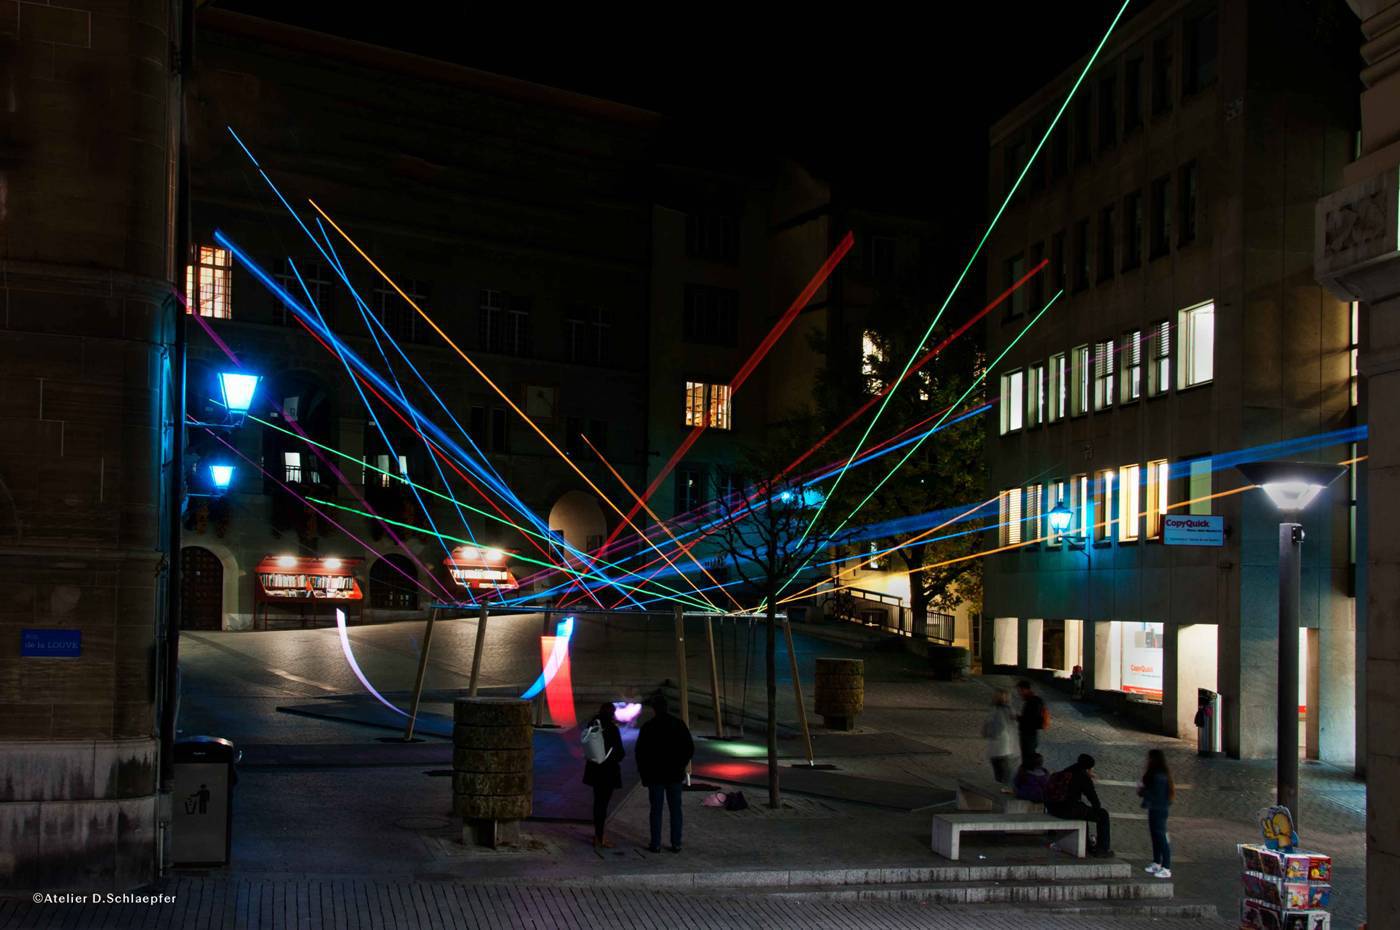 Balancez les lumières, Place de la Louve, Lausanne © Atelier D. Schlaepfer